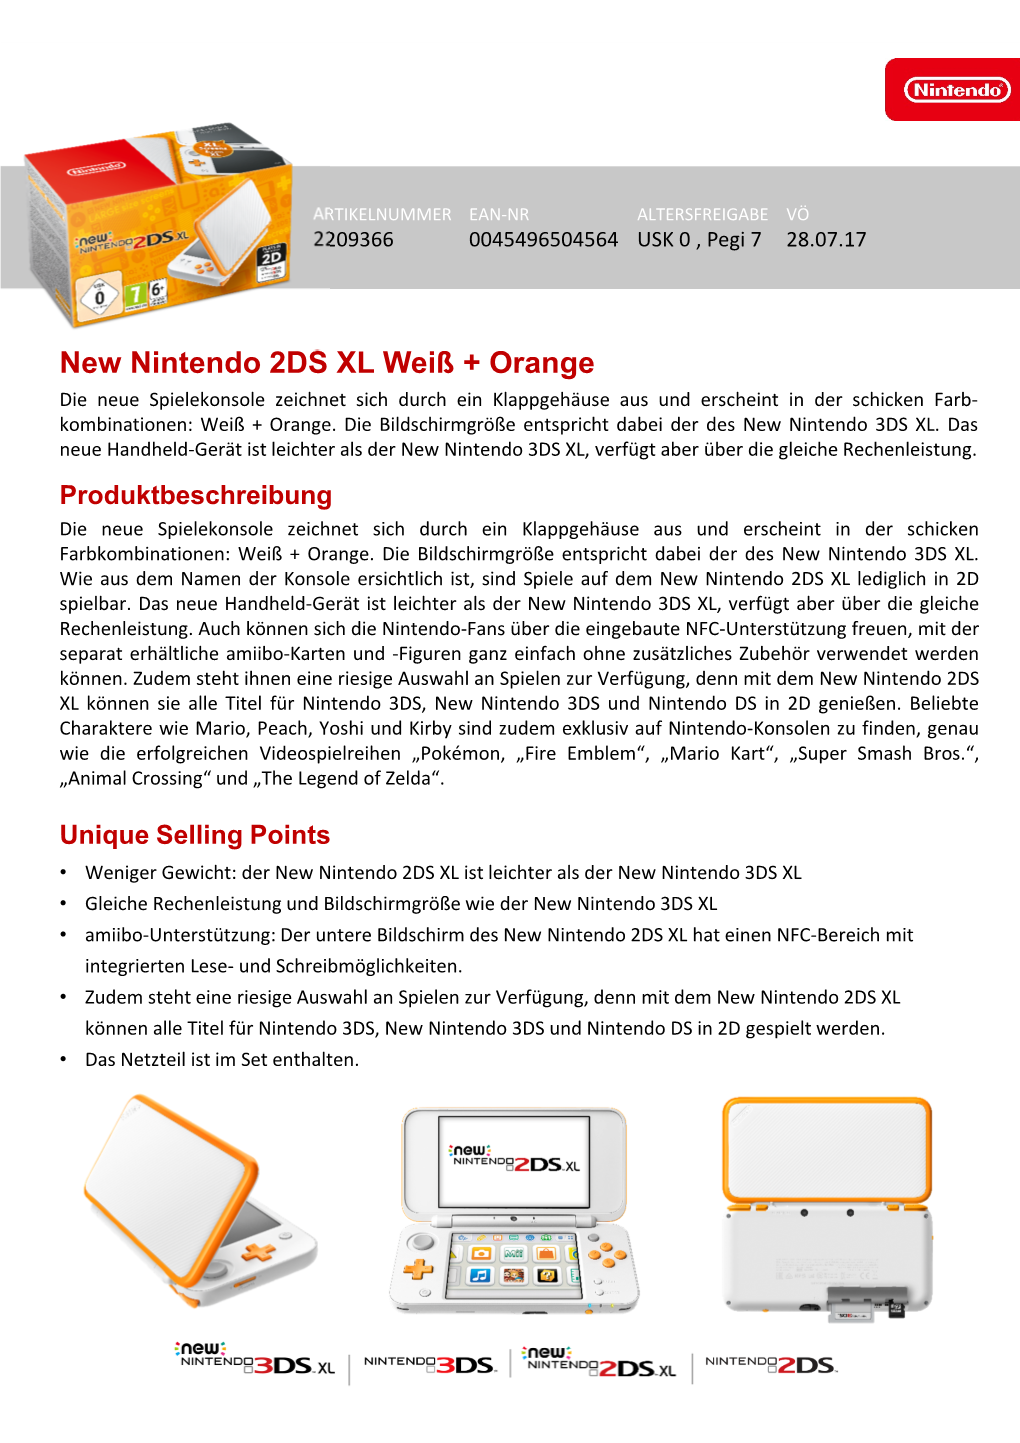 New Nintendo 2DS XL Weiß + Orange Die Neue Spielekonsole Zeichnet Sich Durch Ein Klappgehäuse Aus Und Erscheint in Der Schicken Farb- Kombinationen: Weiß + Orange